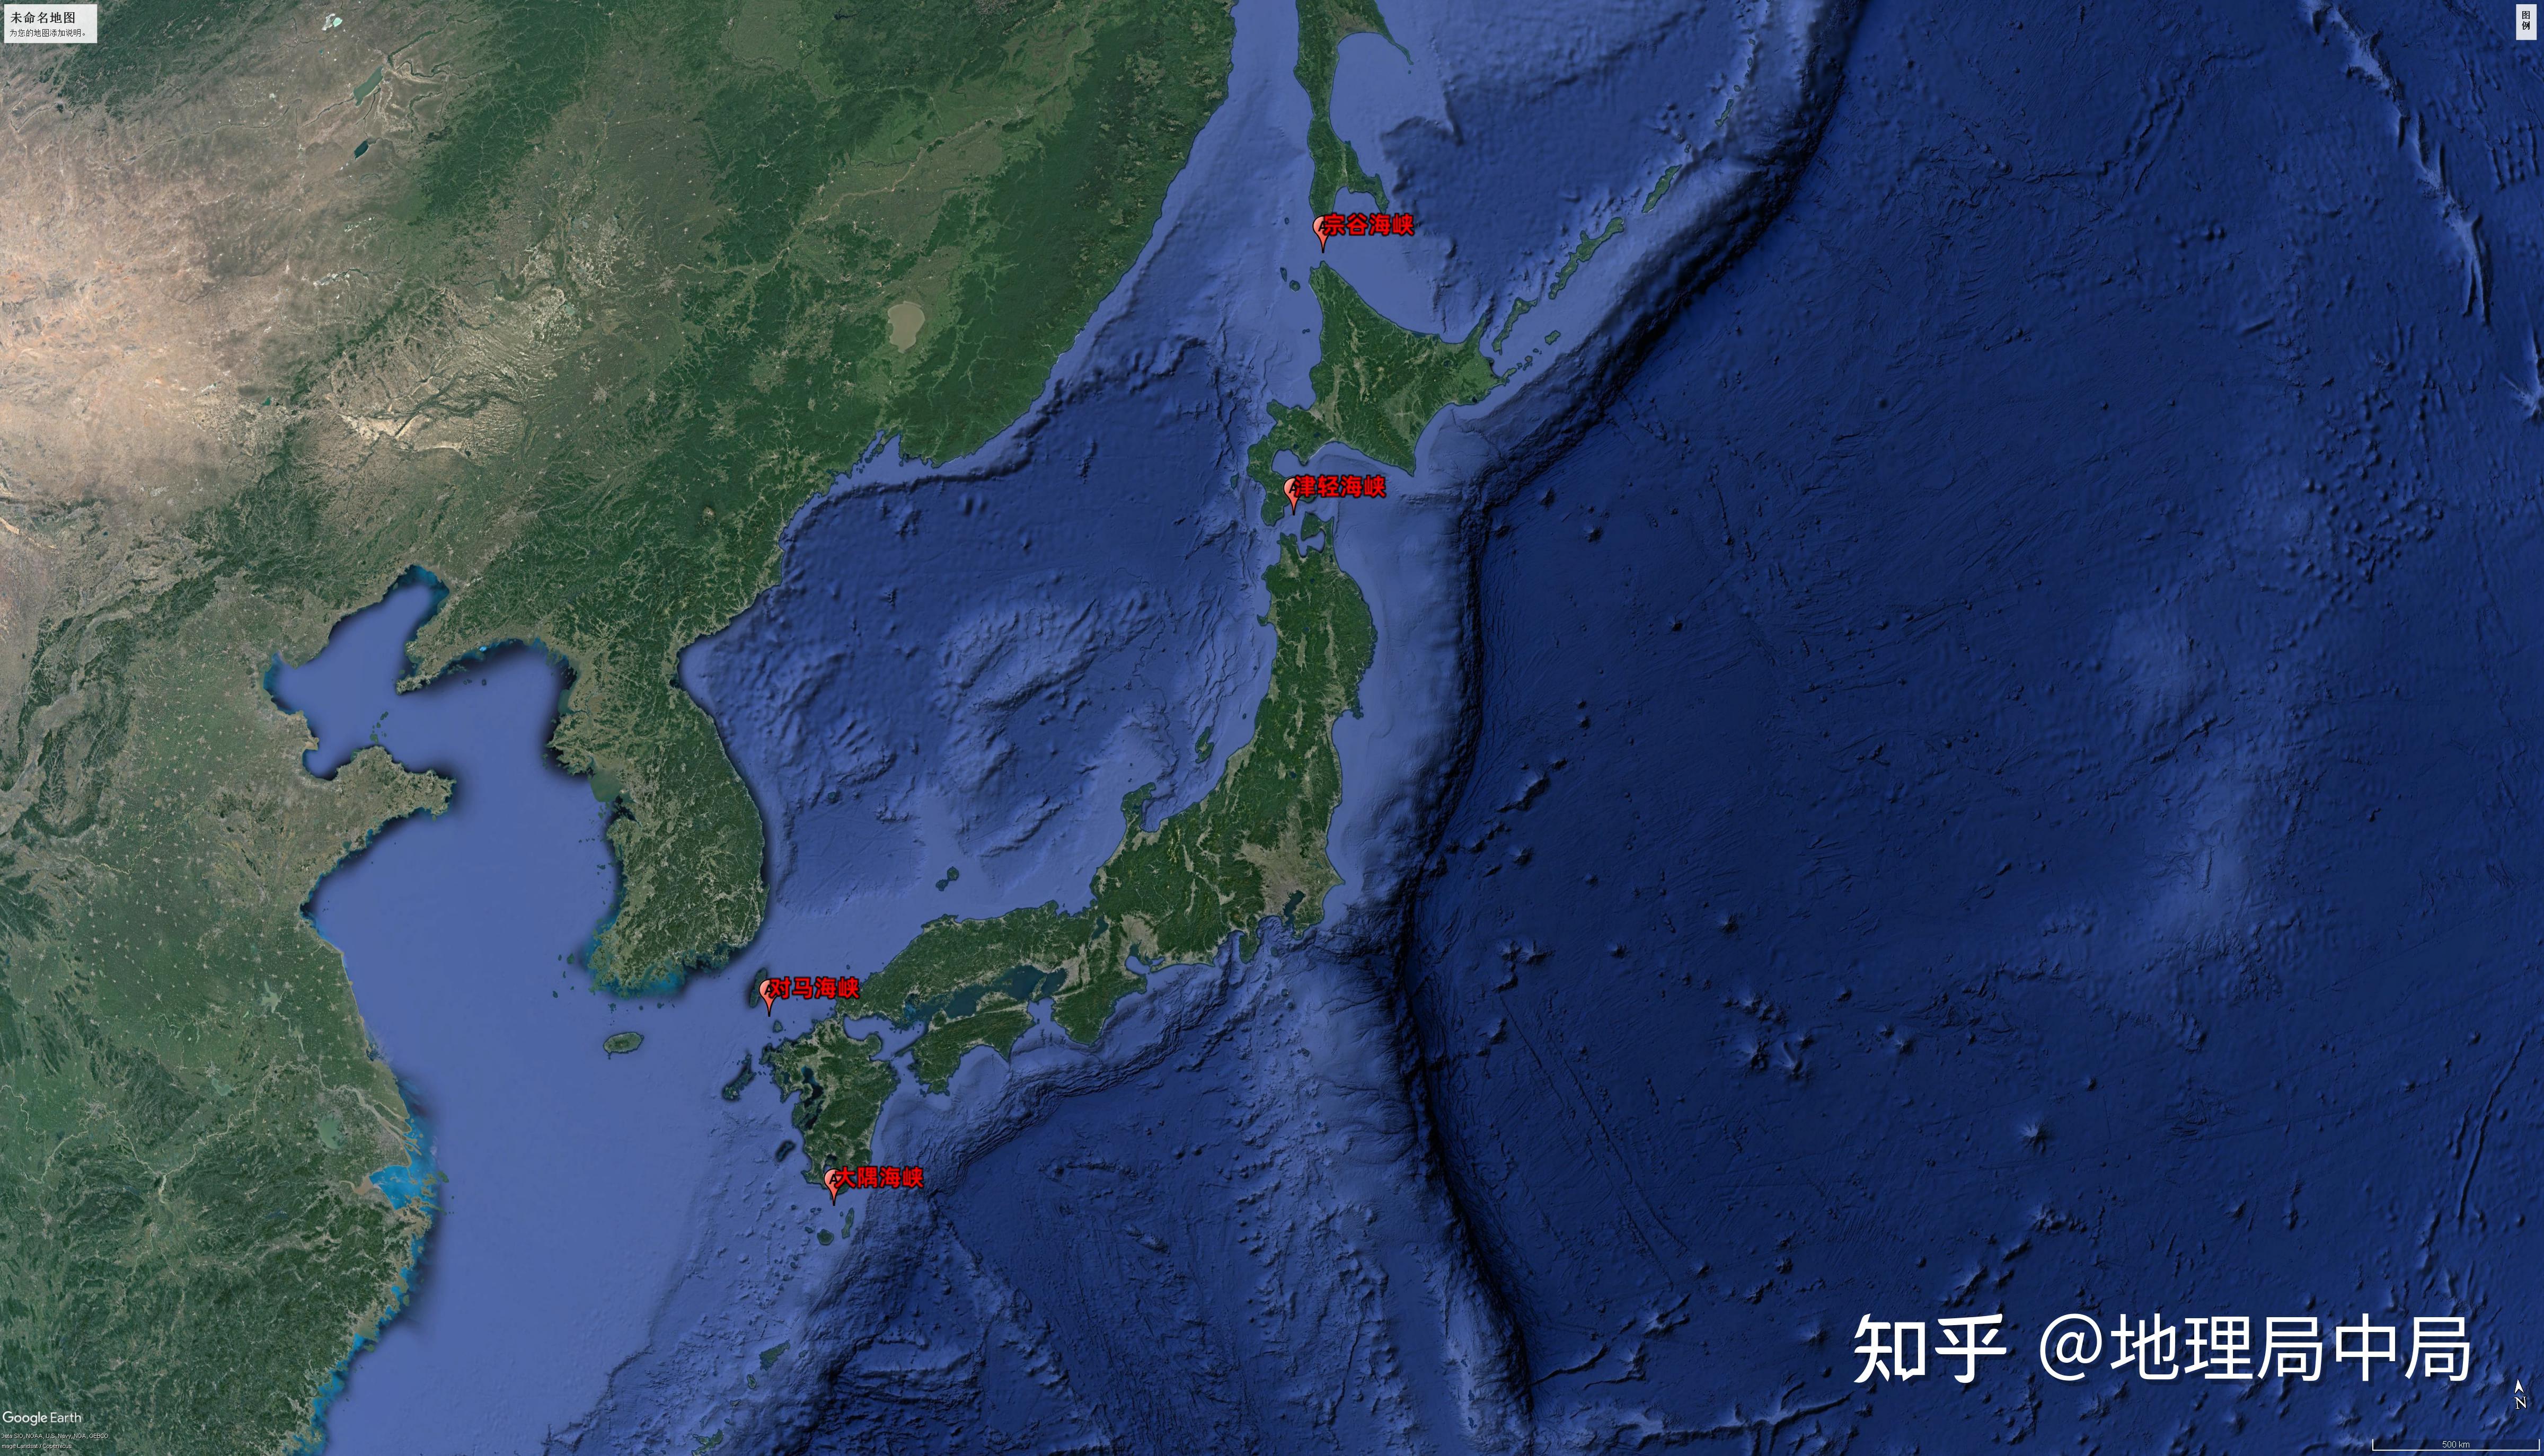 津轻海峡日本12海里的领海法失效了吗缩水的日本海峡